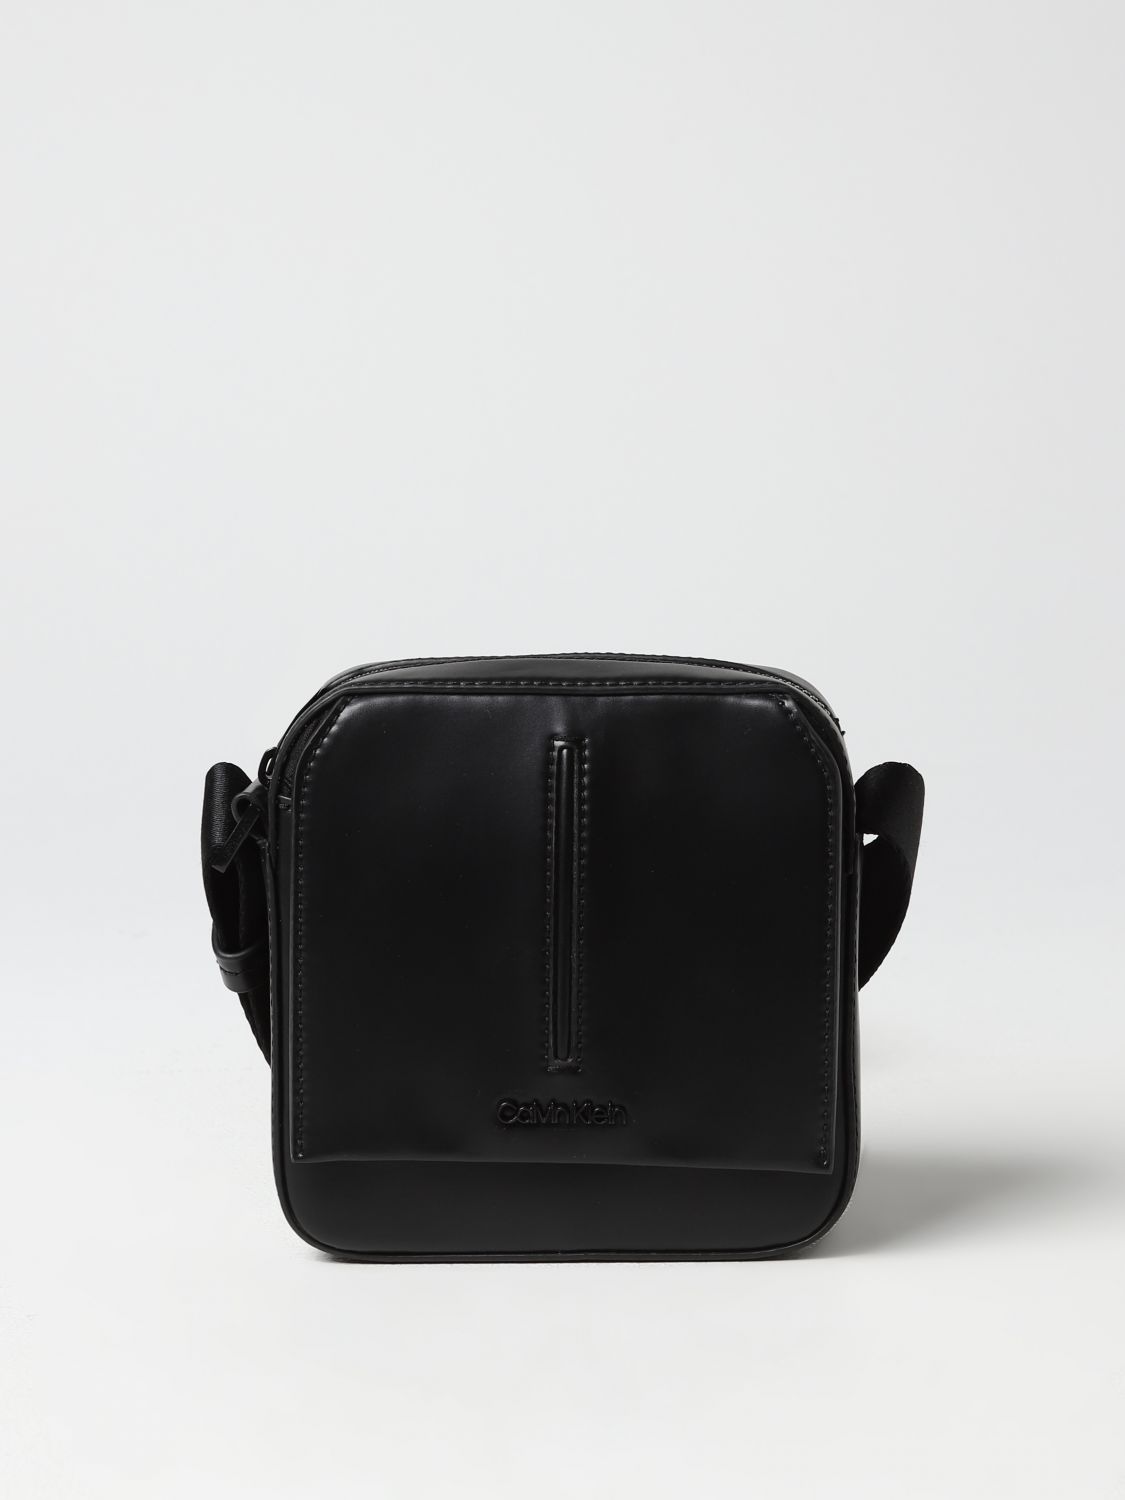 Calvin Klein, Camera Cross Body Bag, Camera Bags